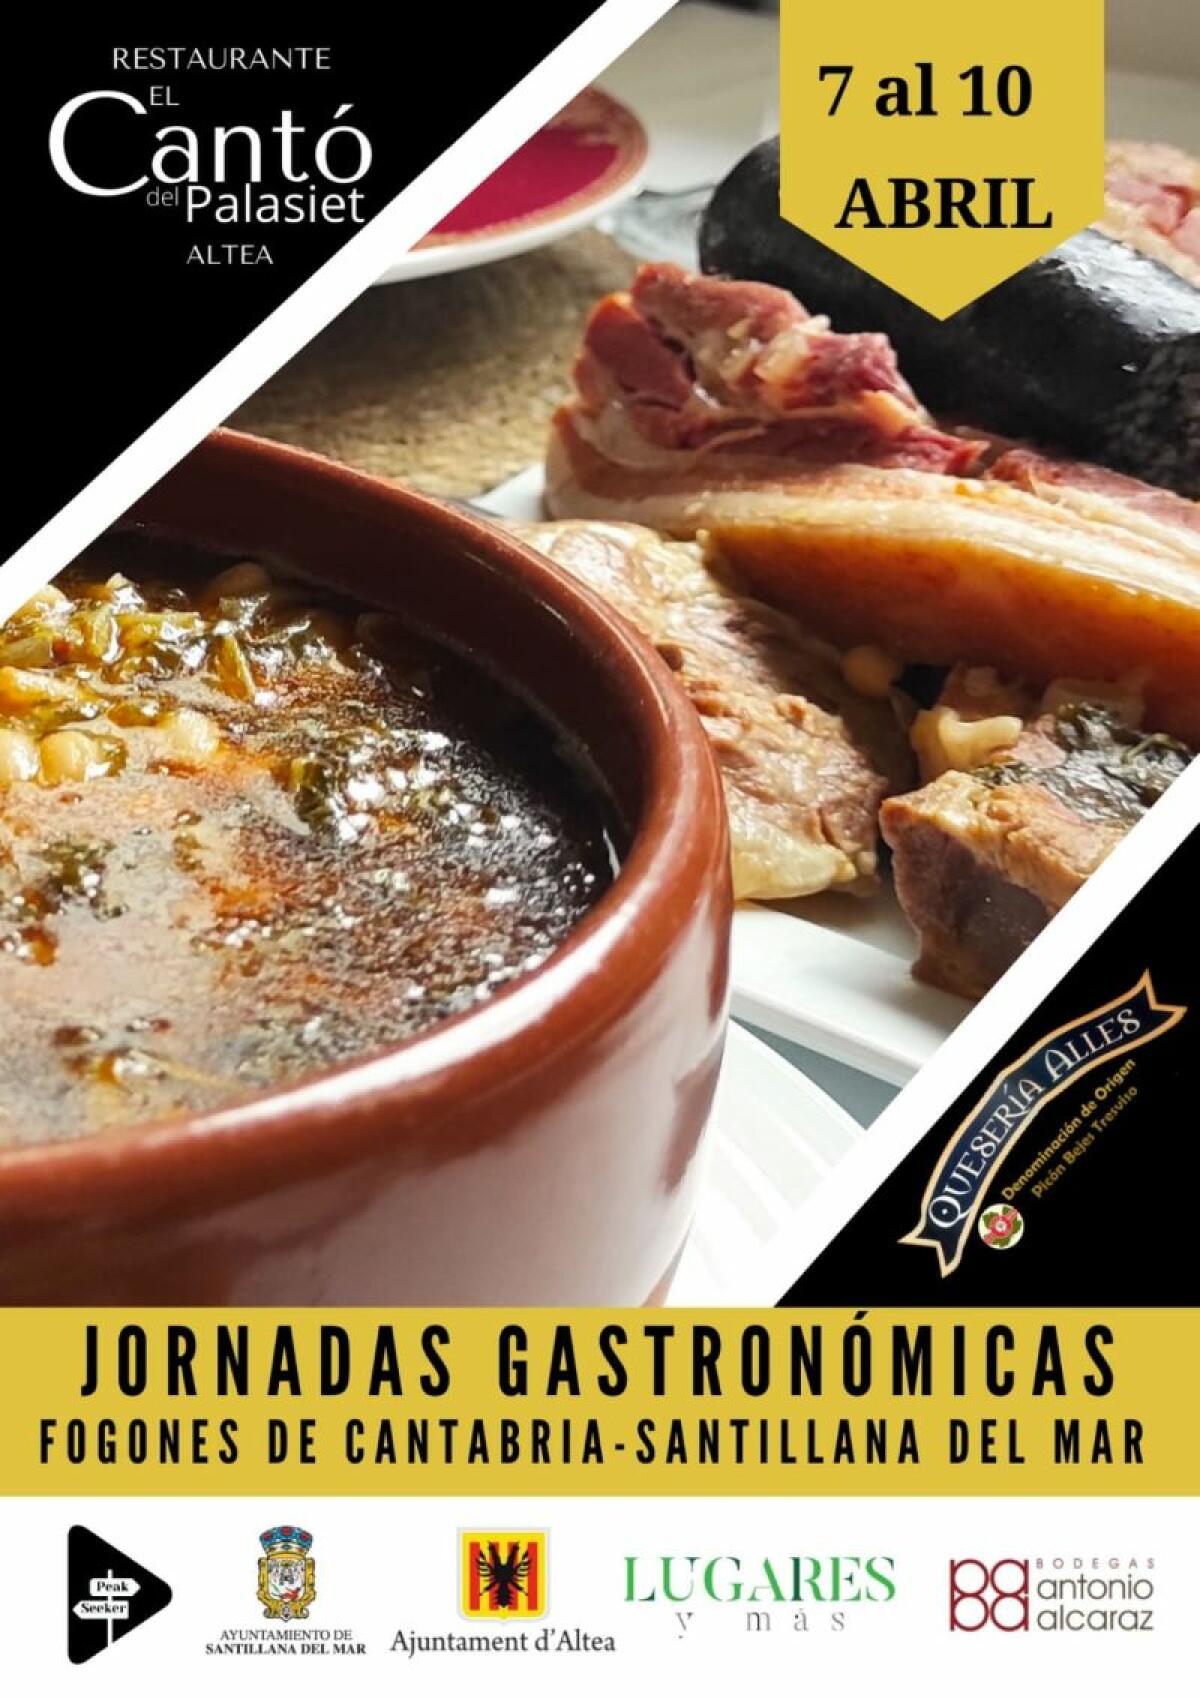 Hoy arrancan las “Jornadas Gastronómicas Fogones de Cantabria – Santillana del Mar” en El Cantó del Palasiet de Altea